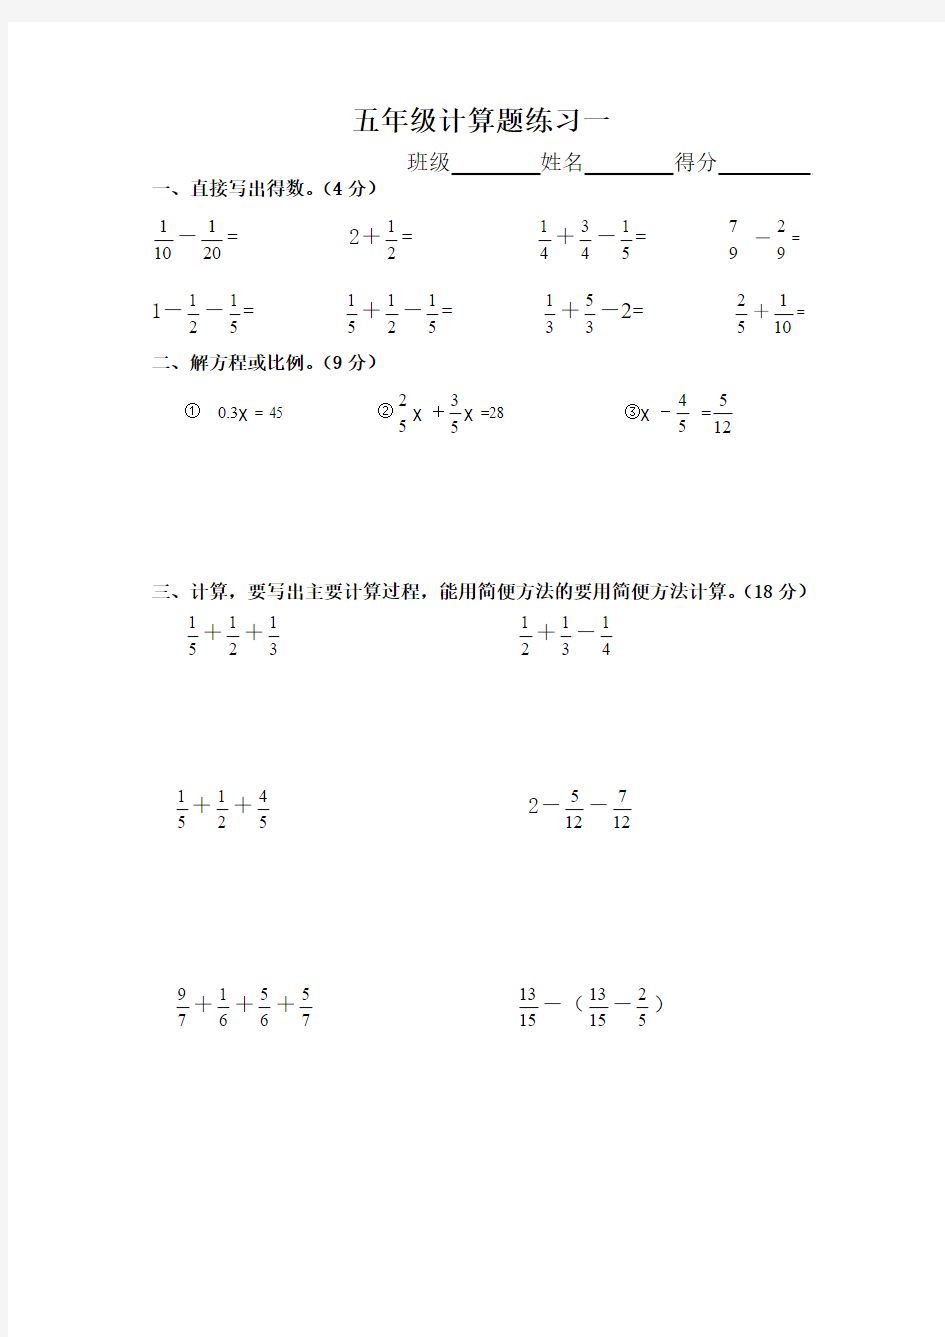 人教版五年级下册数学计算题练习10套暑期作业 可编辑打印